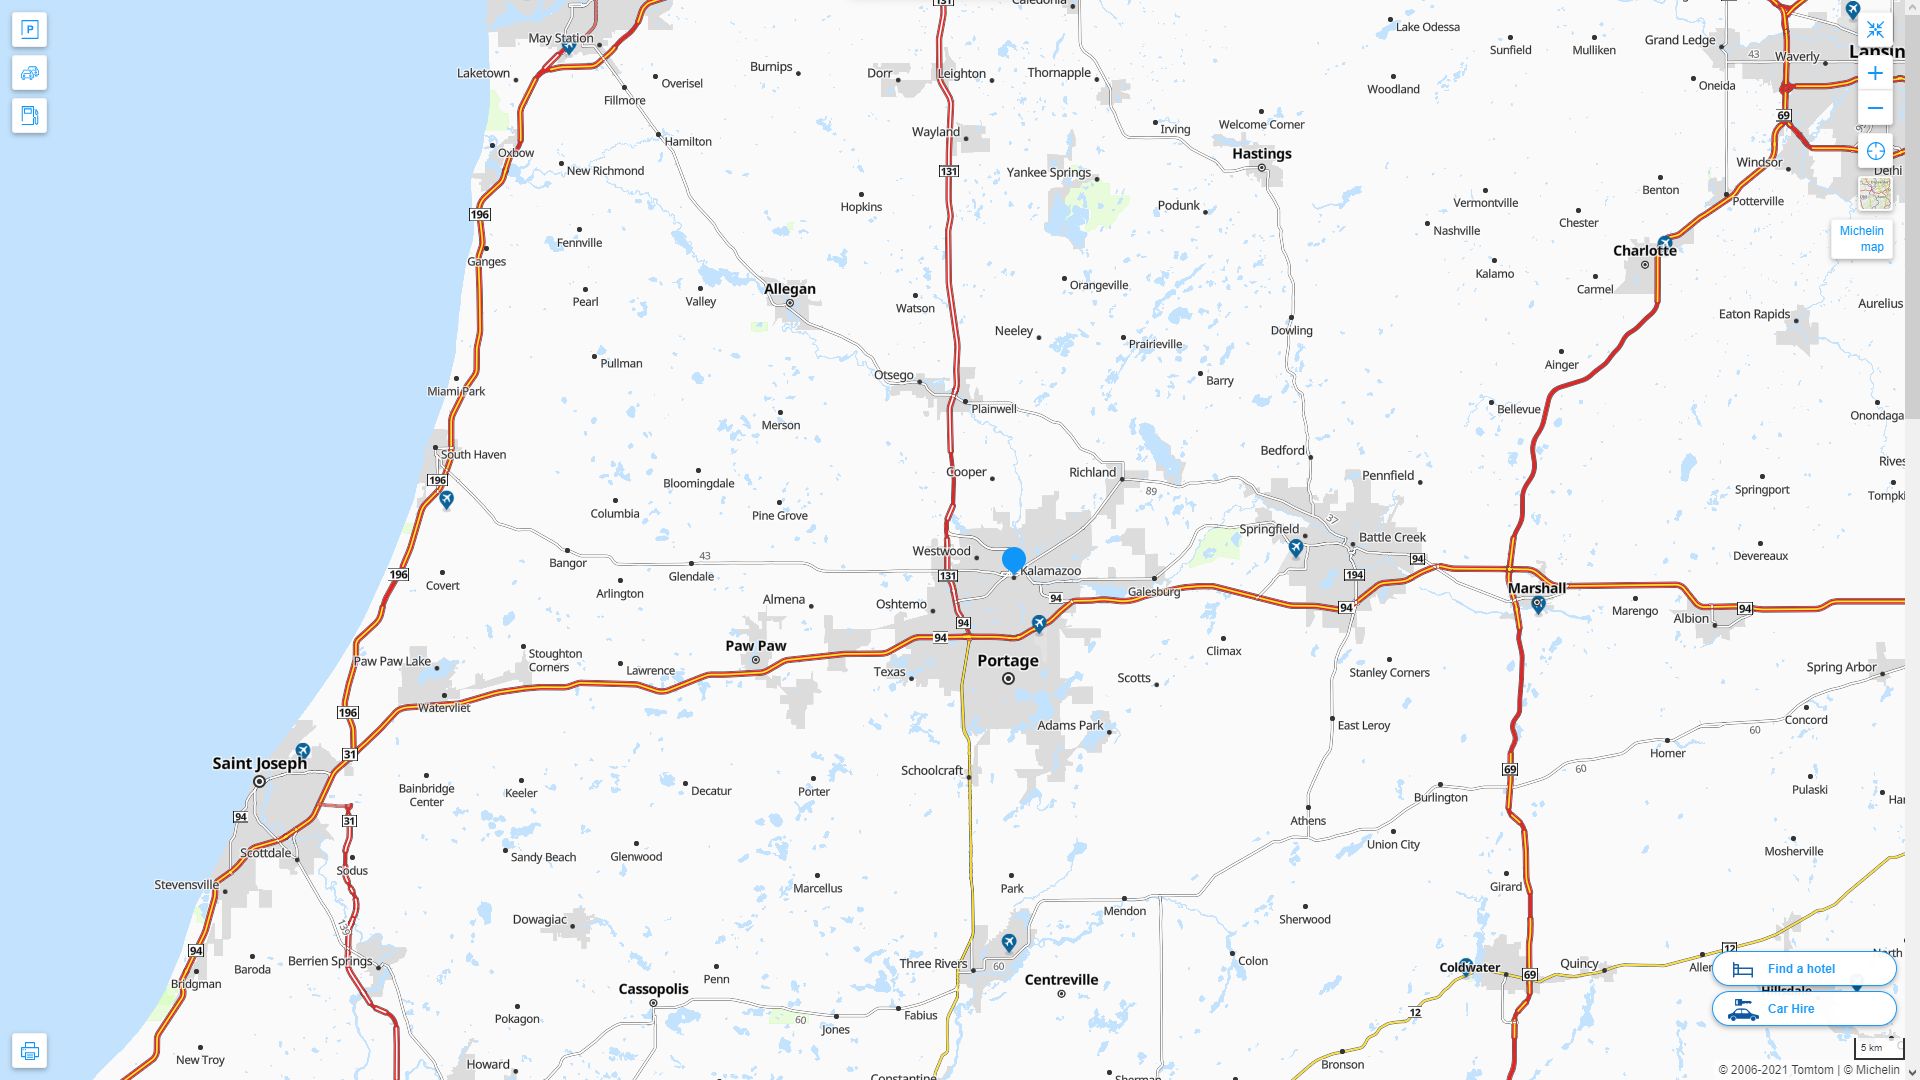 Kalamazoo Michigan Highway and Road Map